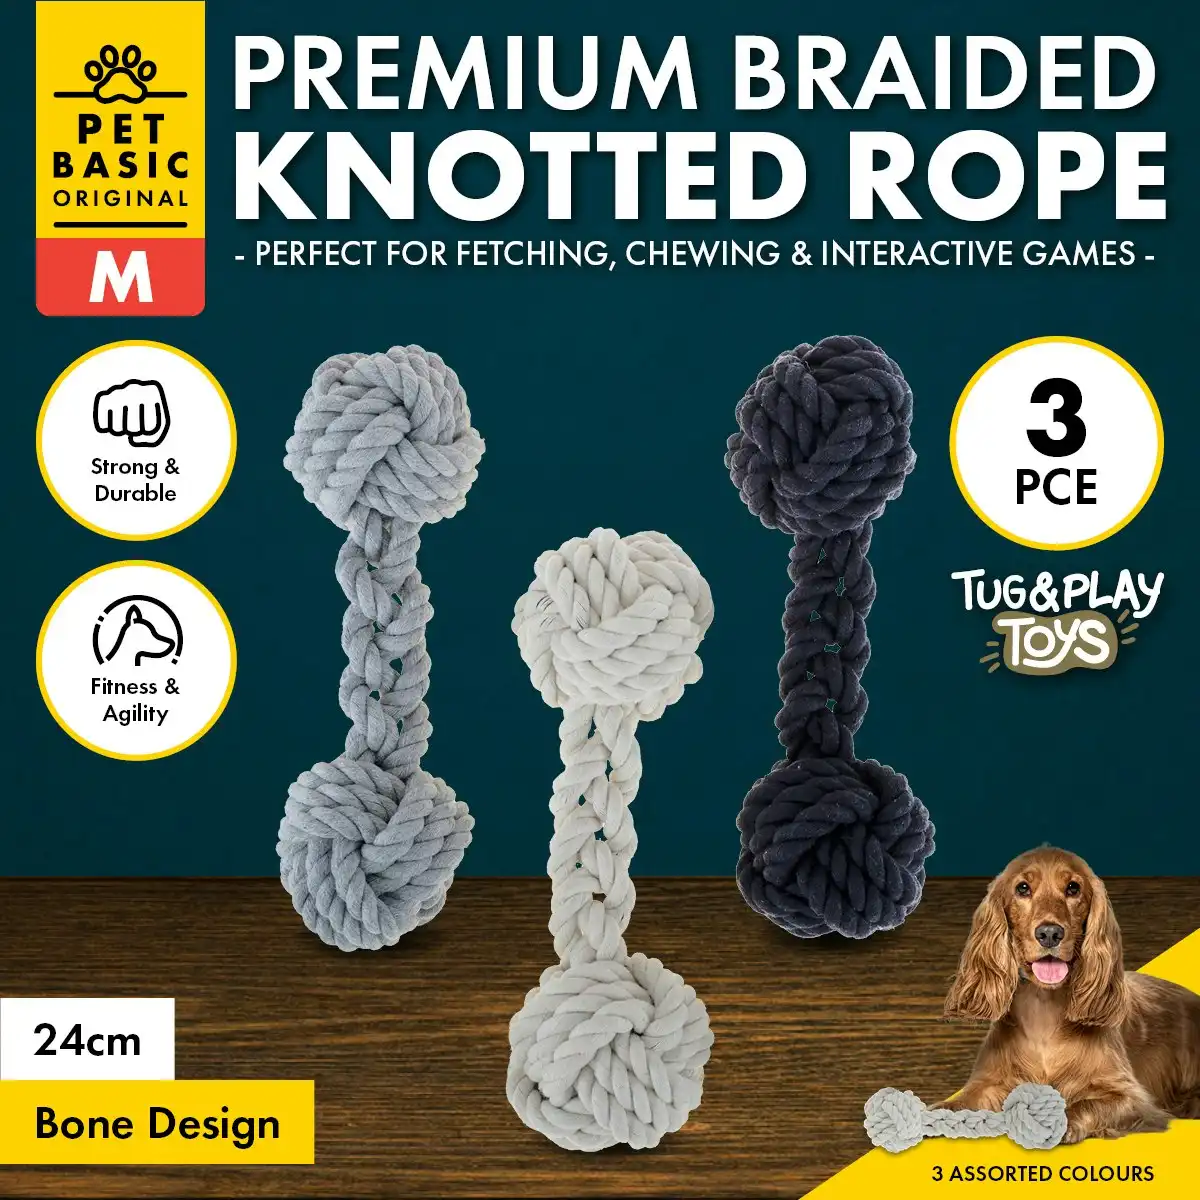 Pet Basic 3PCE Premium Braided Knot Bone Size Medium Natural Fibres 24cm